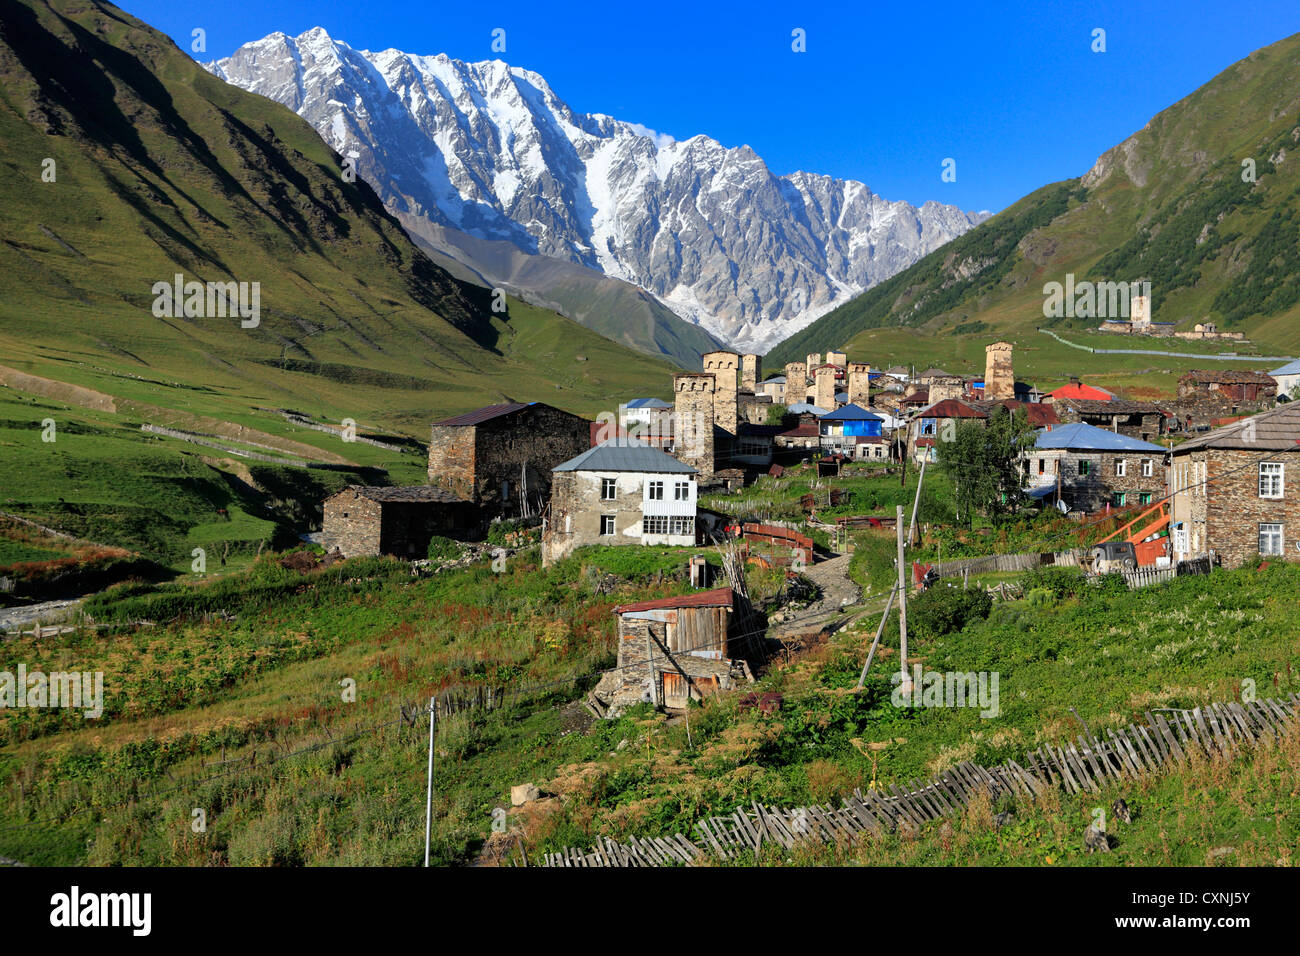 Shkhara peak (5068 m), Ushghuli community, Upper Svanetia, Georgia Stock Photo